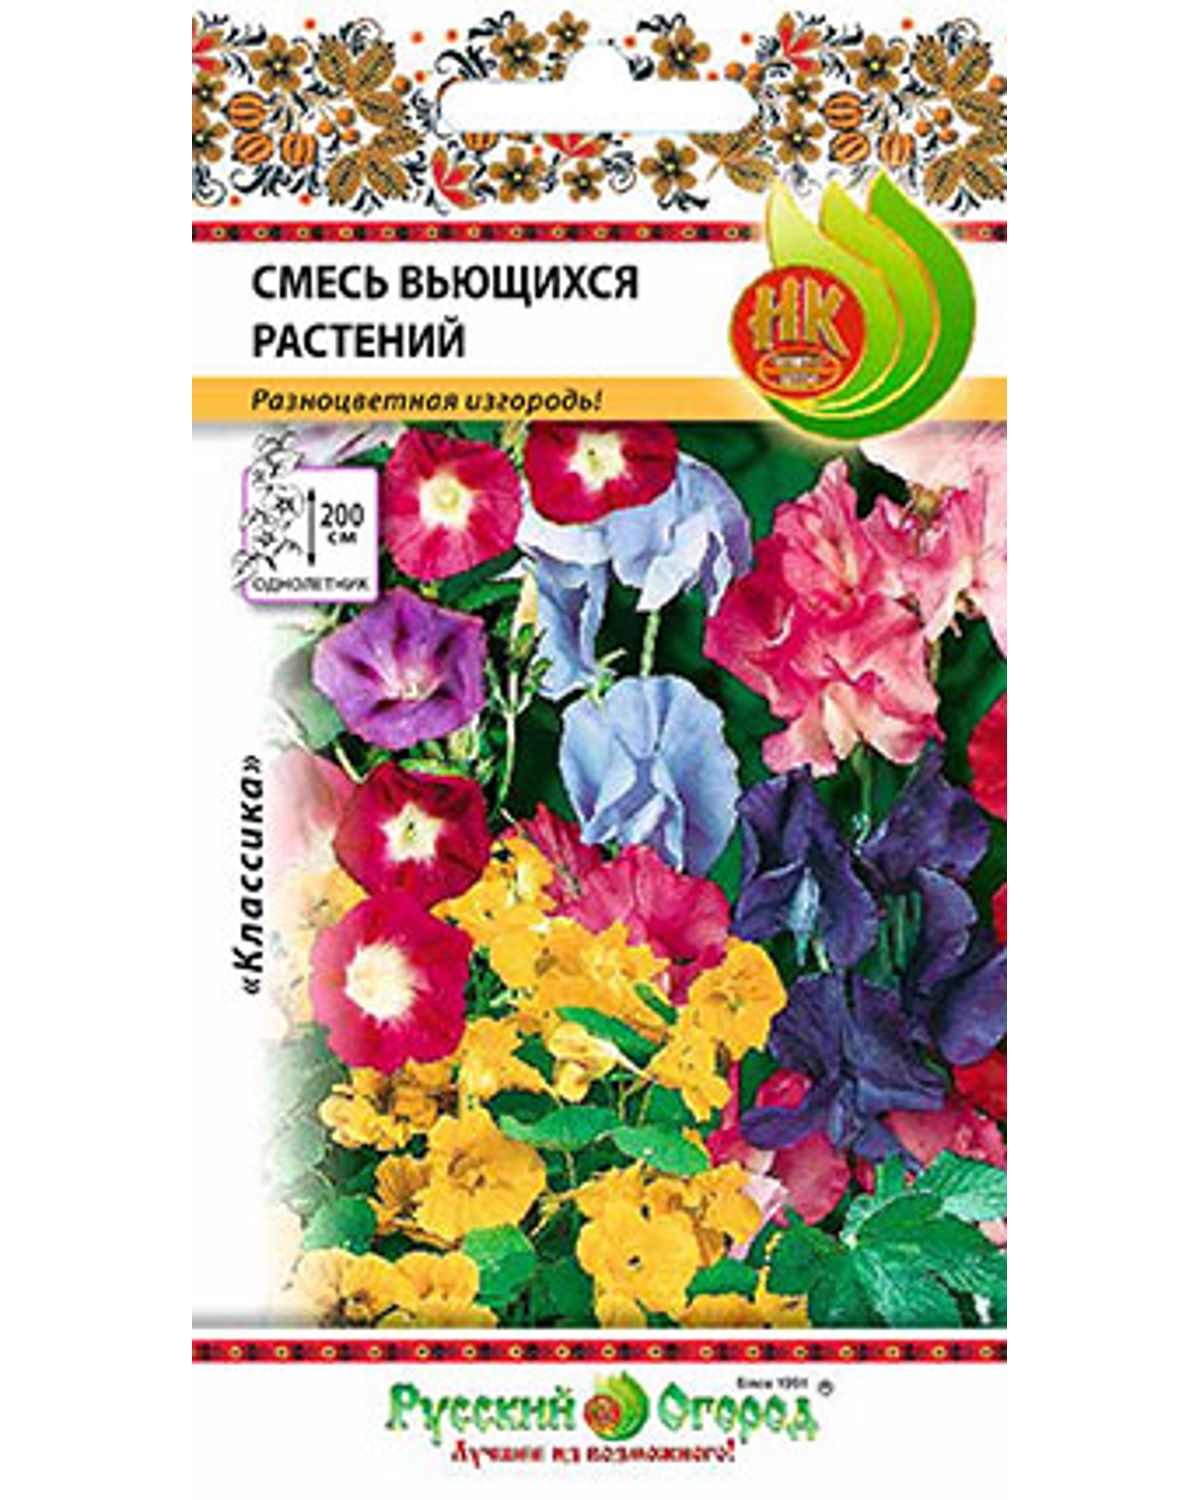 Семена смесь цветов Русский огород смесь вьющихся растений 709668 1 уп.